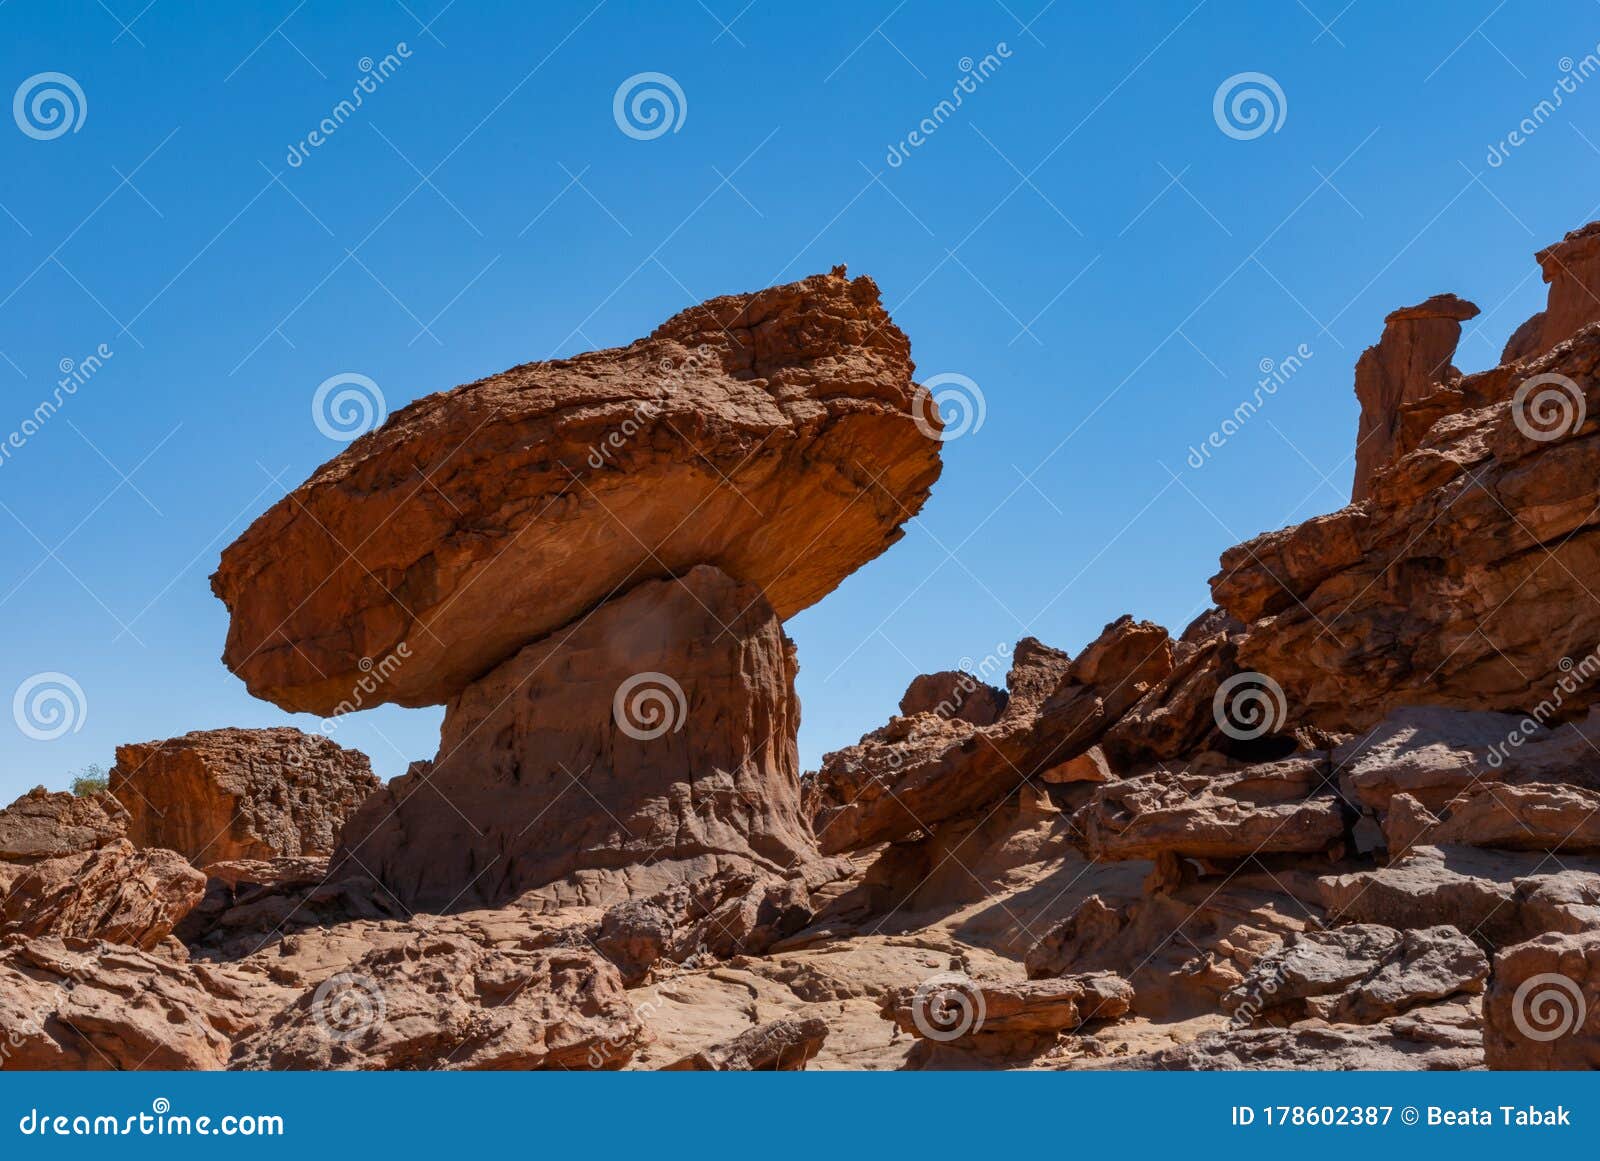 非洲乍得恩内迪沙漠蘑菇状砂岩塔 库存图片. 图片 包括有 腐蚀, 侵蚀, 山脉, 形成, 高潮, 表单 - 178602399